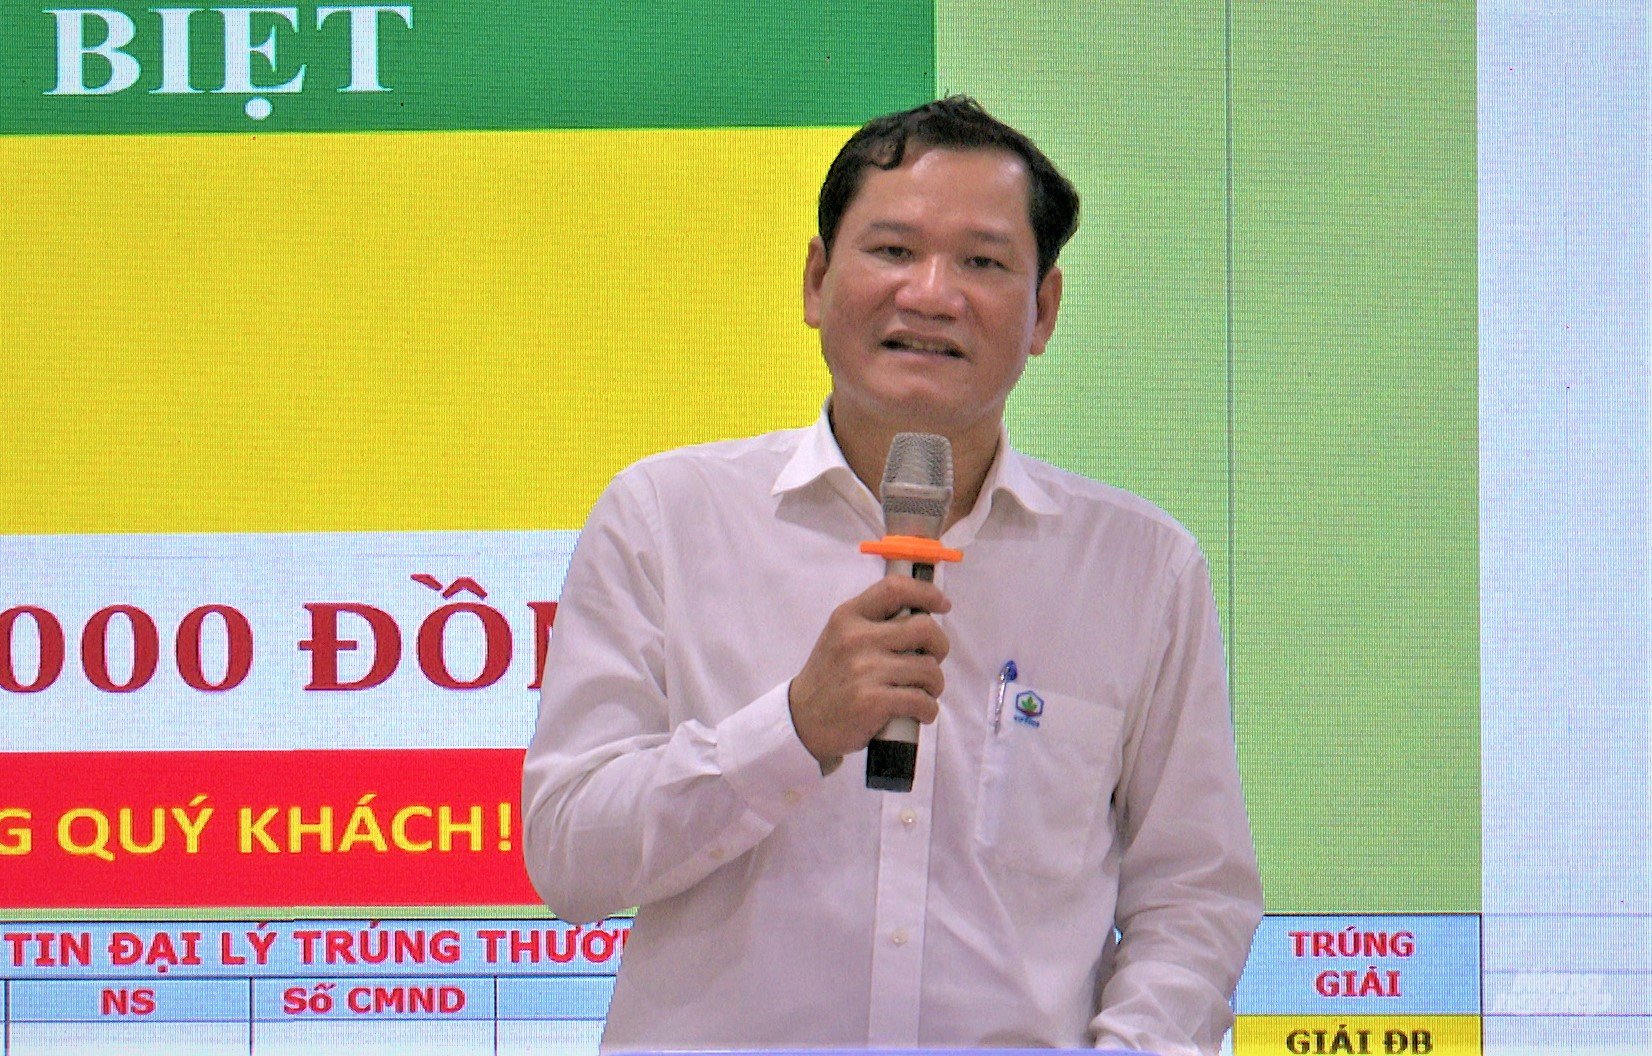 Ông Nguyễn Thân, Tổng giám đốc Công ty Vipesco phát biểu khai mạc chương trình 'Vipesco – Tri ân khách hàng năm 2021'. Ảnh: Minh Sáng.